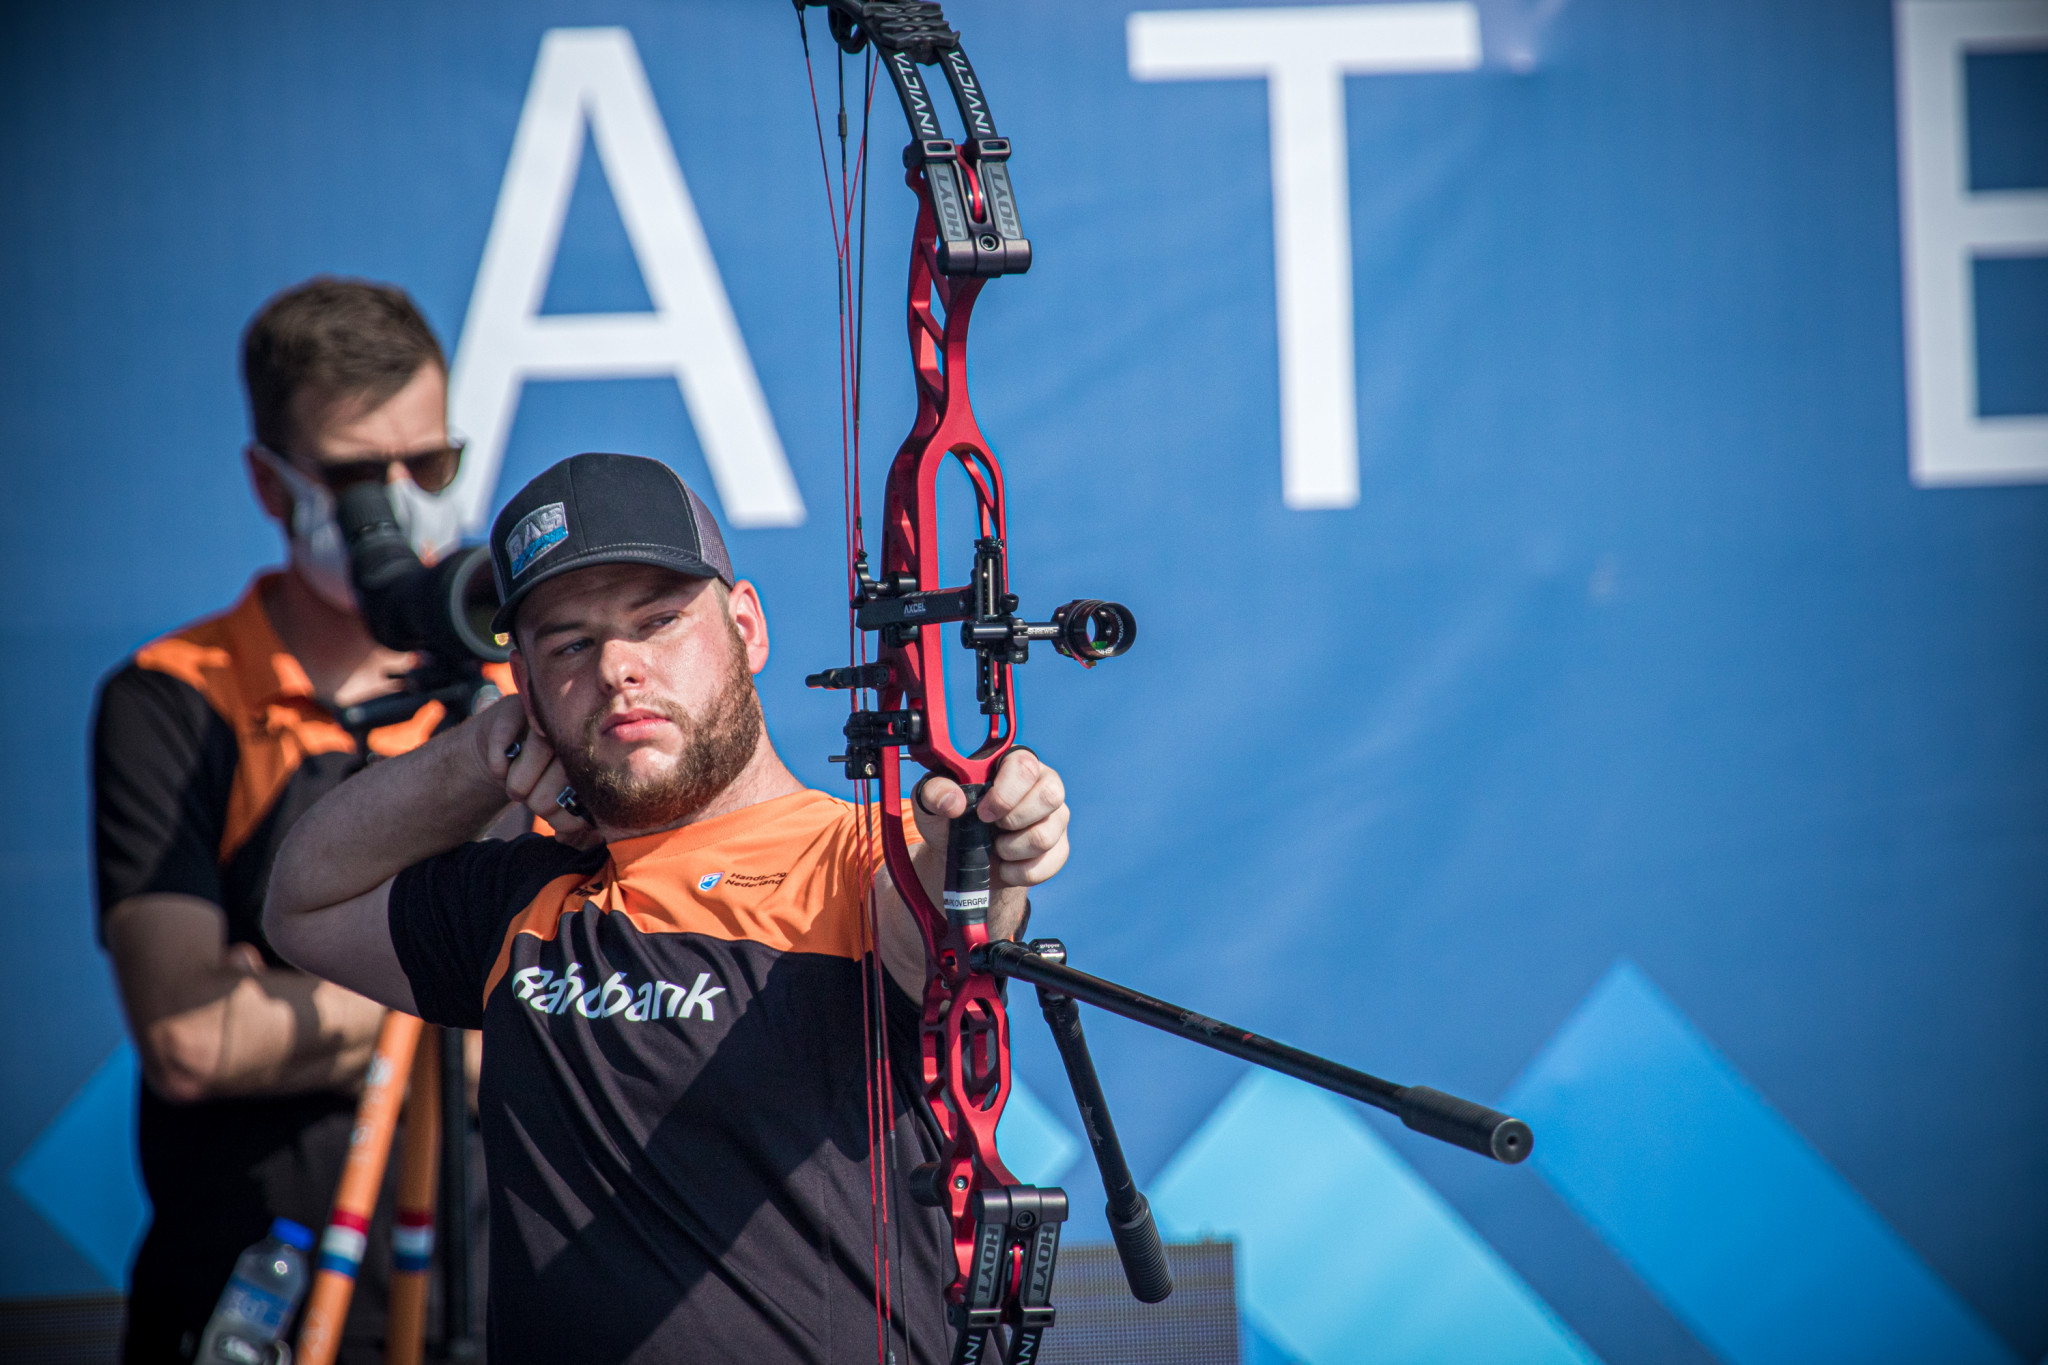 Schloesser and Gellenthien win compound titles at Archery World Cup in Lausanne